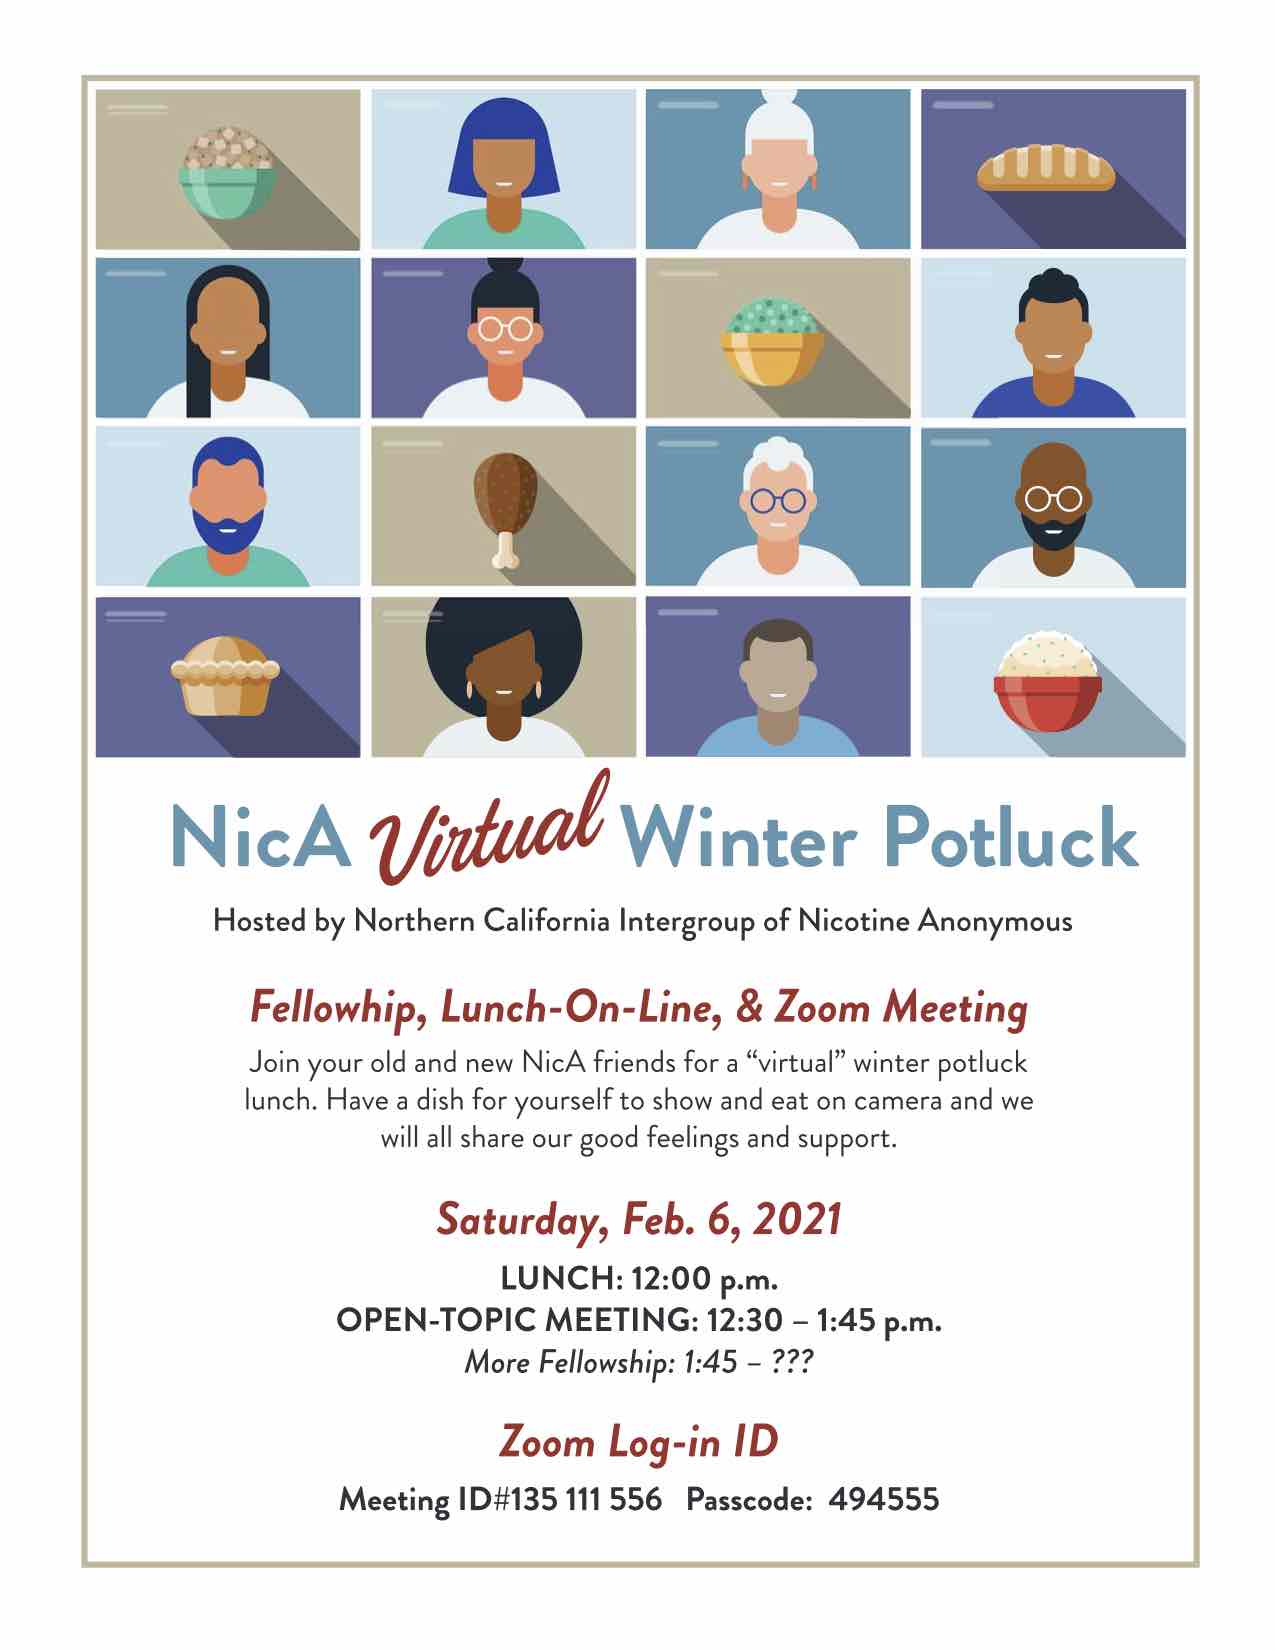 NicA NorCal 2021 Virtual Potluck Flyer